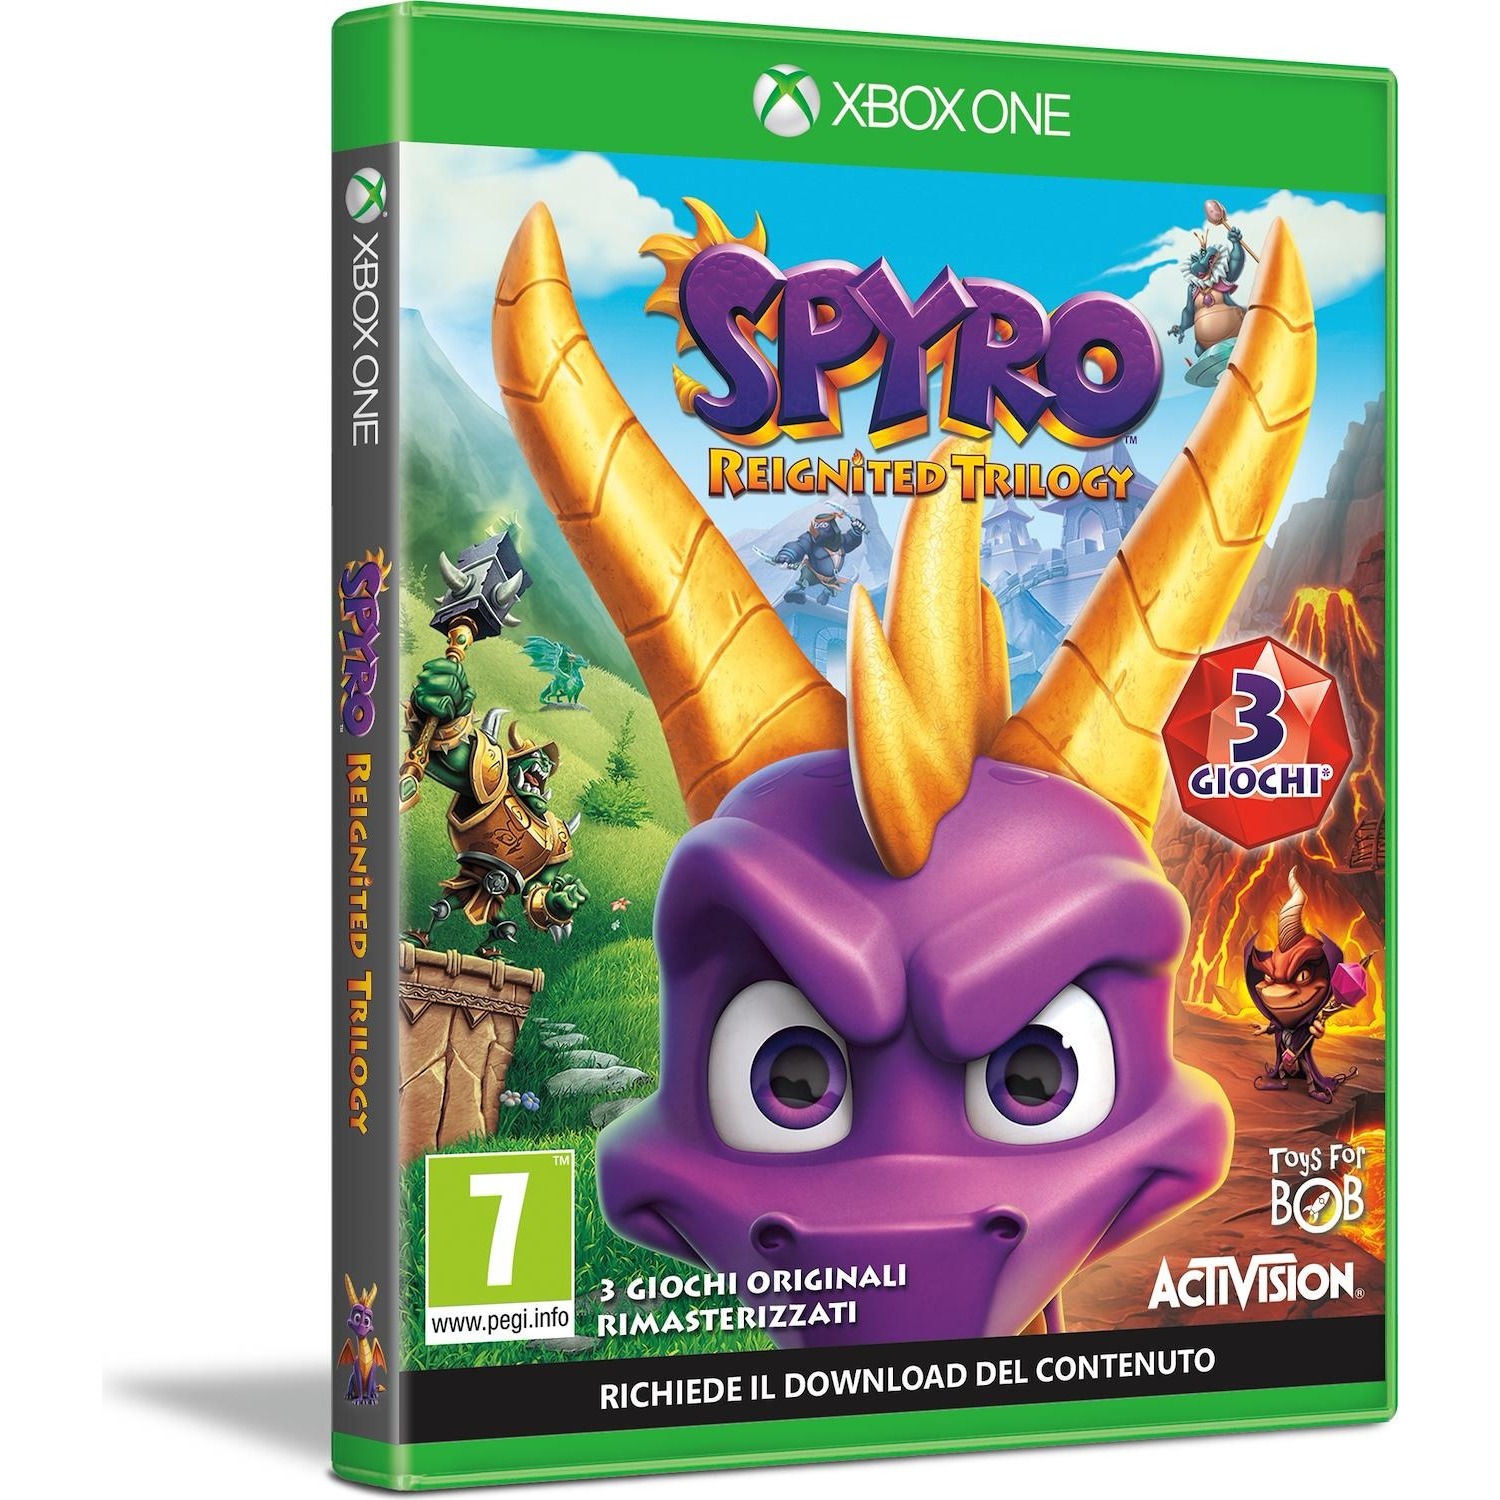 Immagine per Gioco XBOX ONE Spyro Trilogy Reignited da DIMOStore